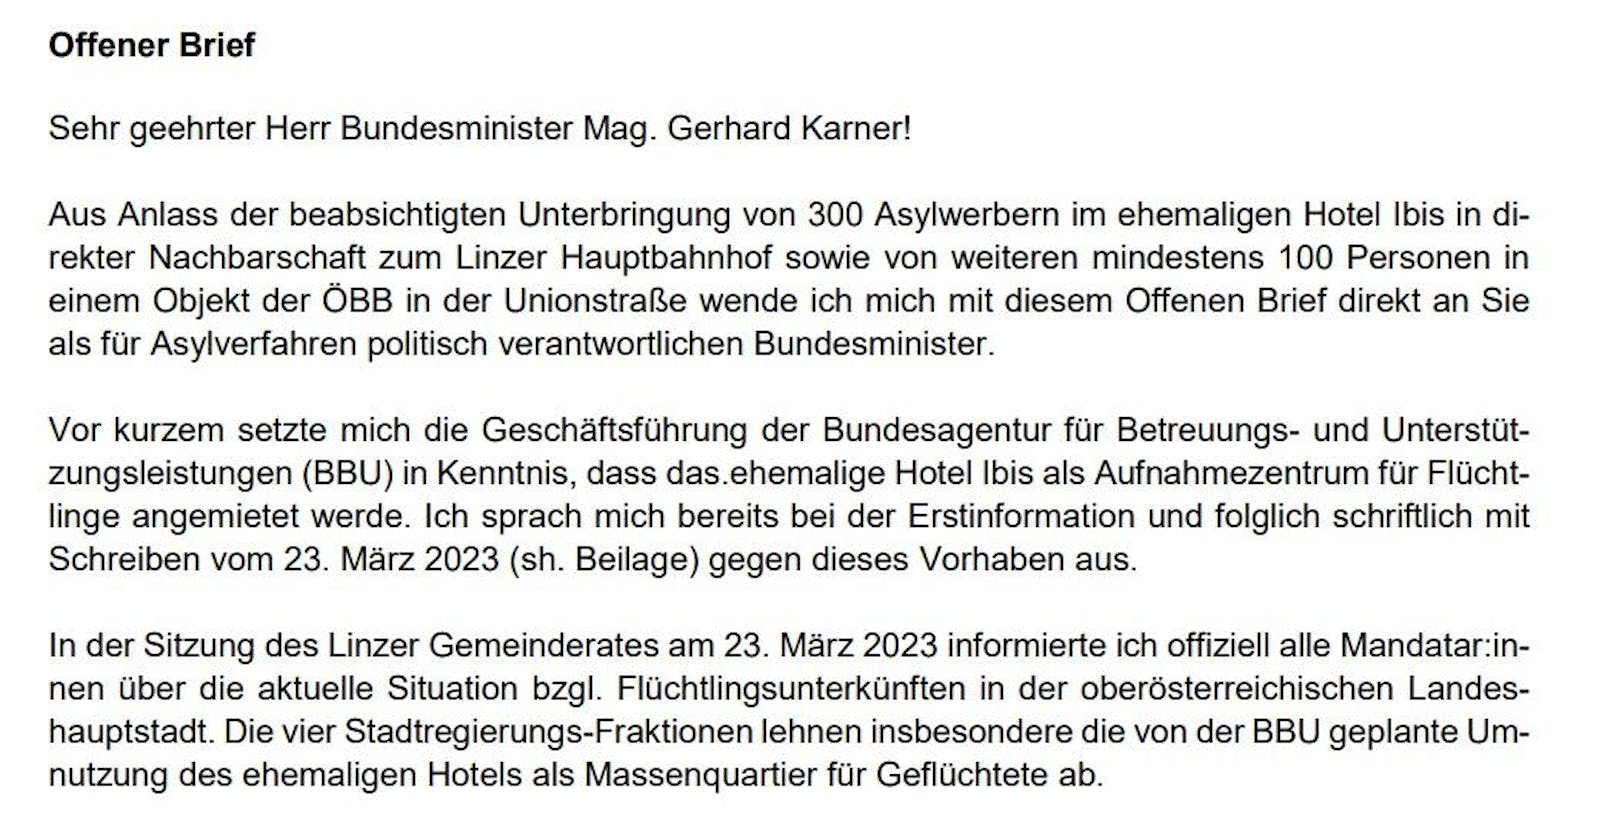 Der Linzer Bürgermeister Klaus Luger schrieb einen offenen Brief an Innenminister Karner.